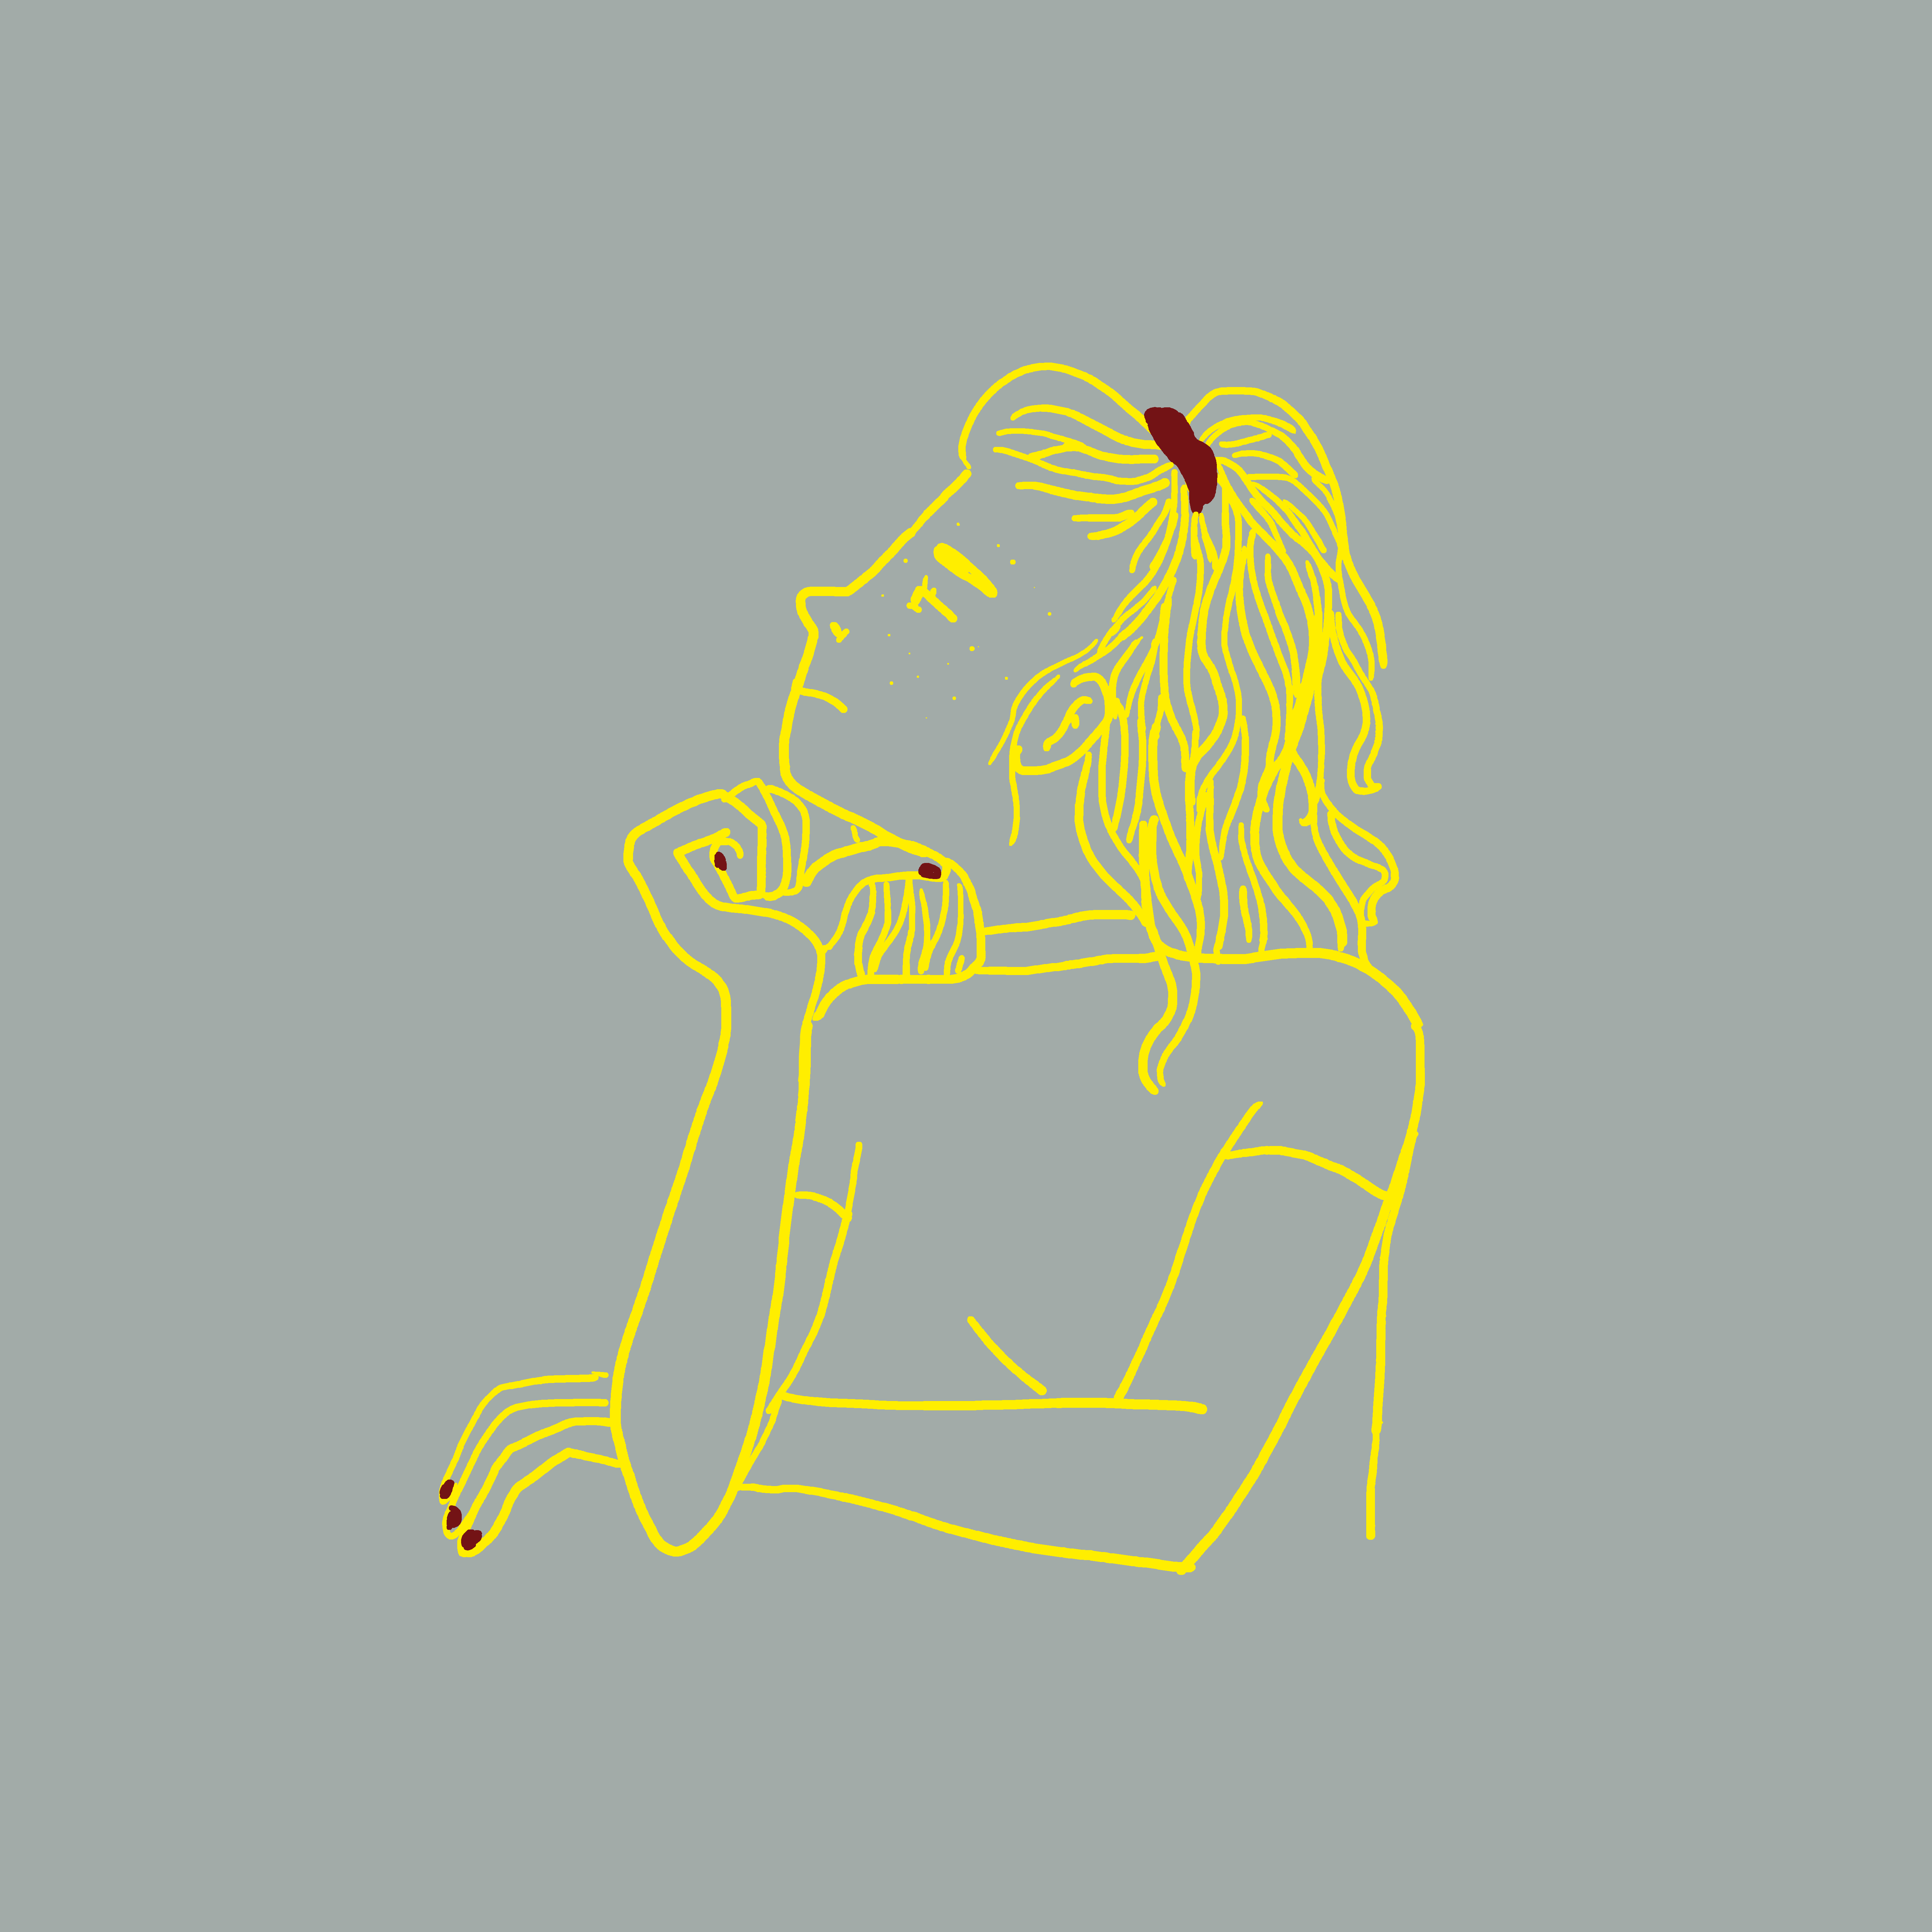 femme blonde avec un chouchou rouge de profil tenant son menton, fond gris